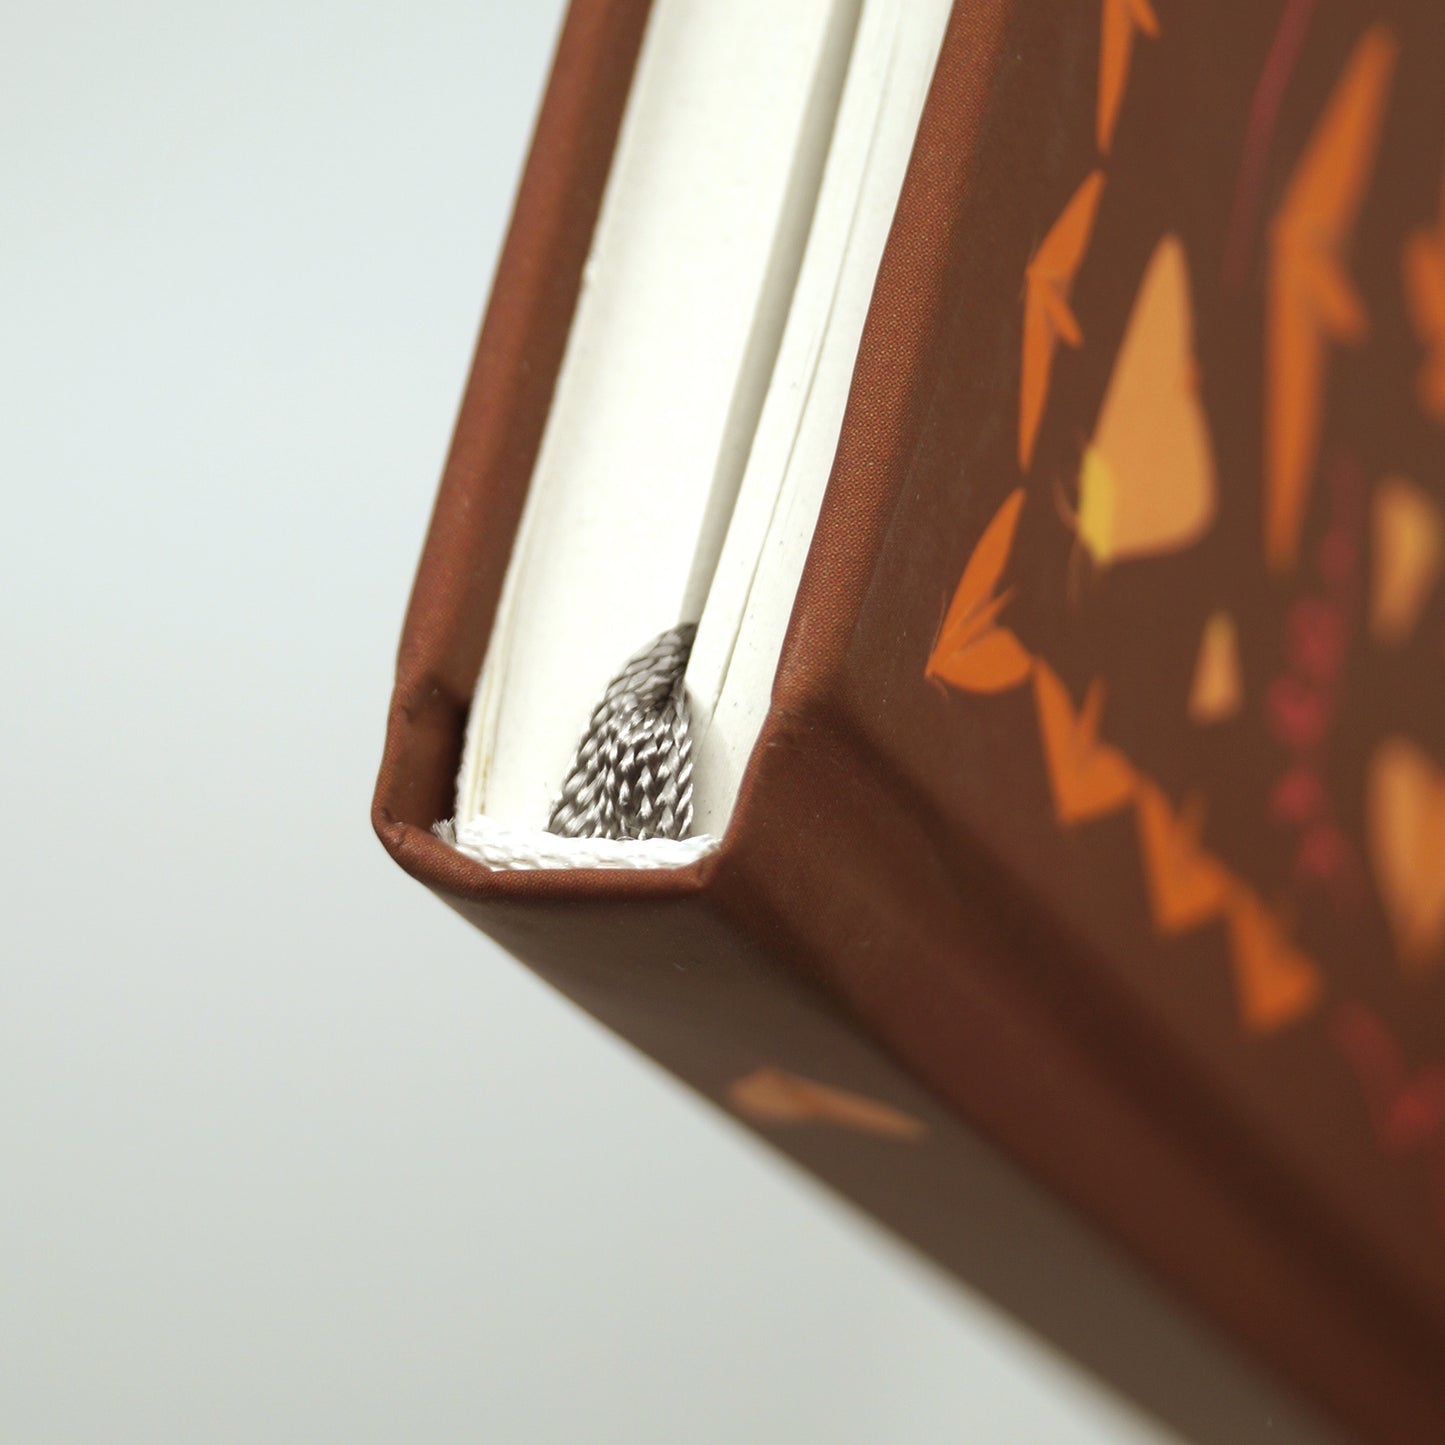 Journaling-Set 'Herbst' | Notizbuch mit 150 Washi-Tape-Stamps und 48 passenden Stickern